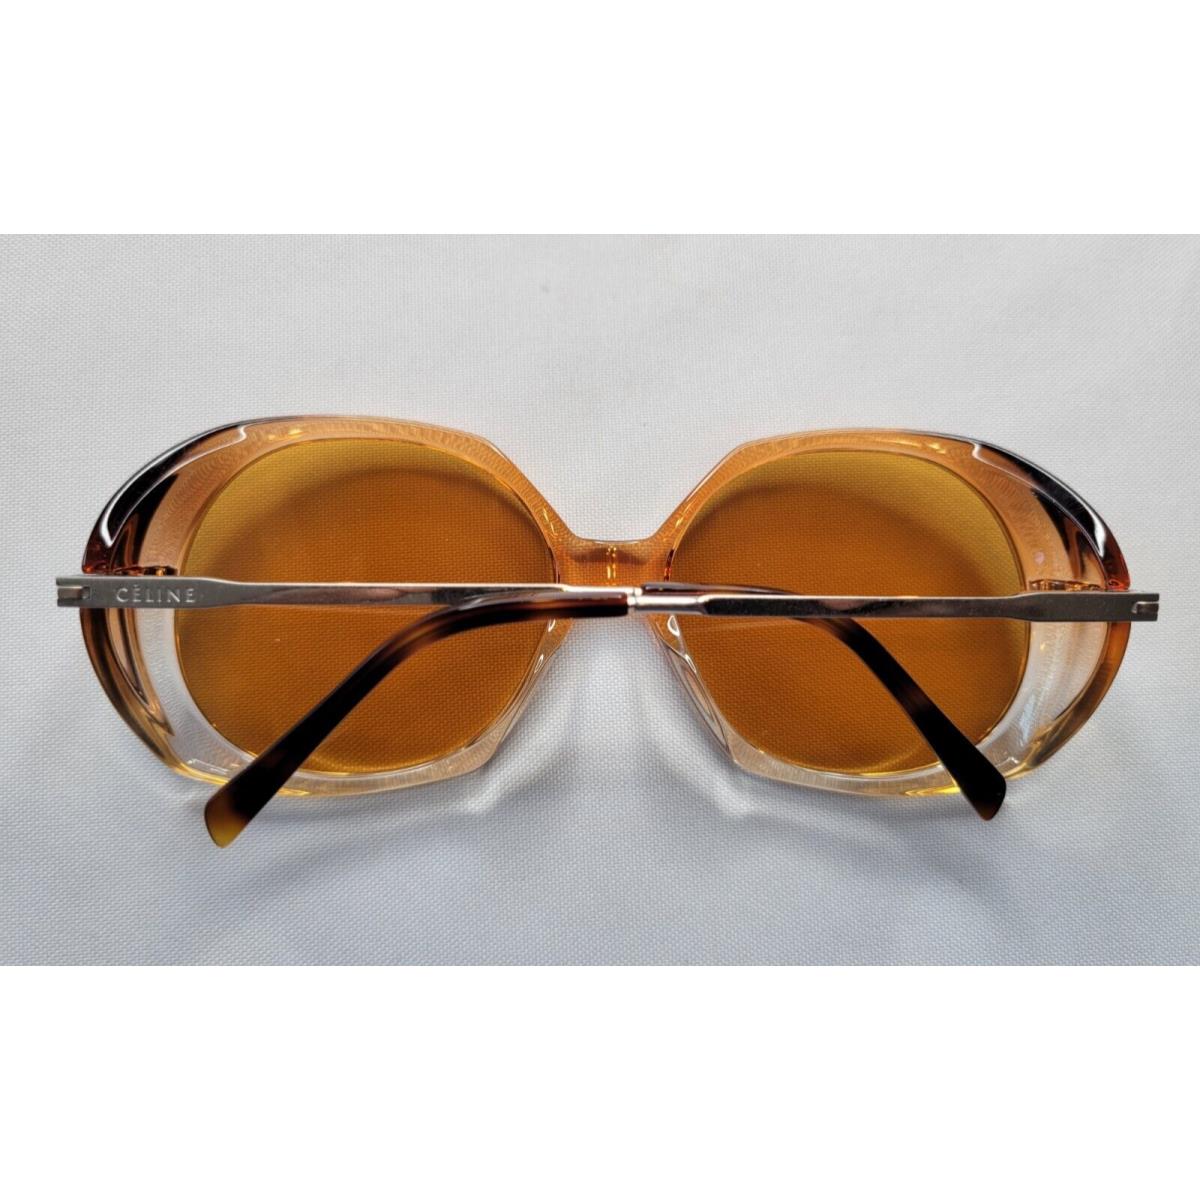 Celine sunglasses  - Brown/Silver Frame, Gray Lens